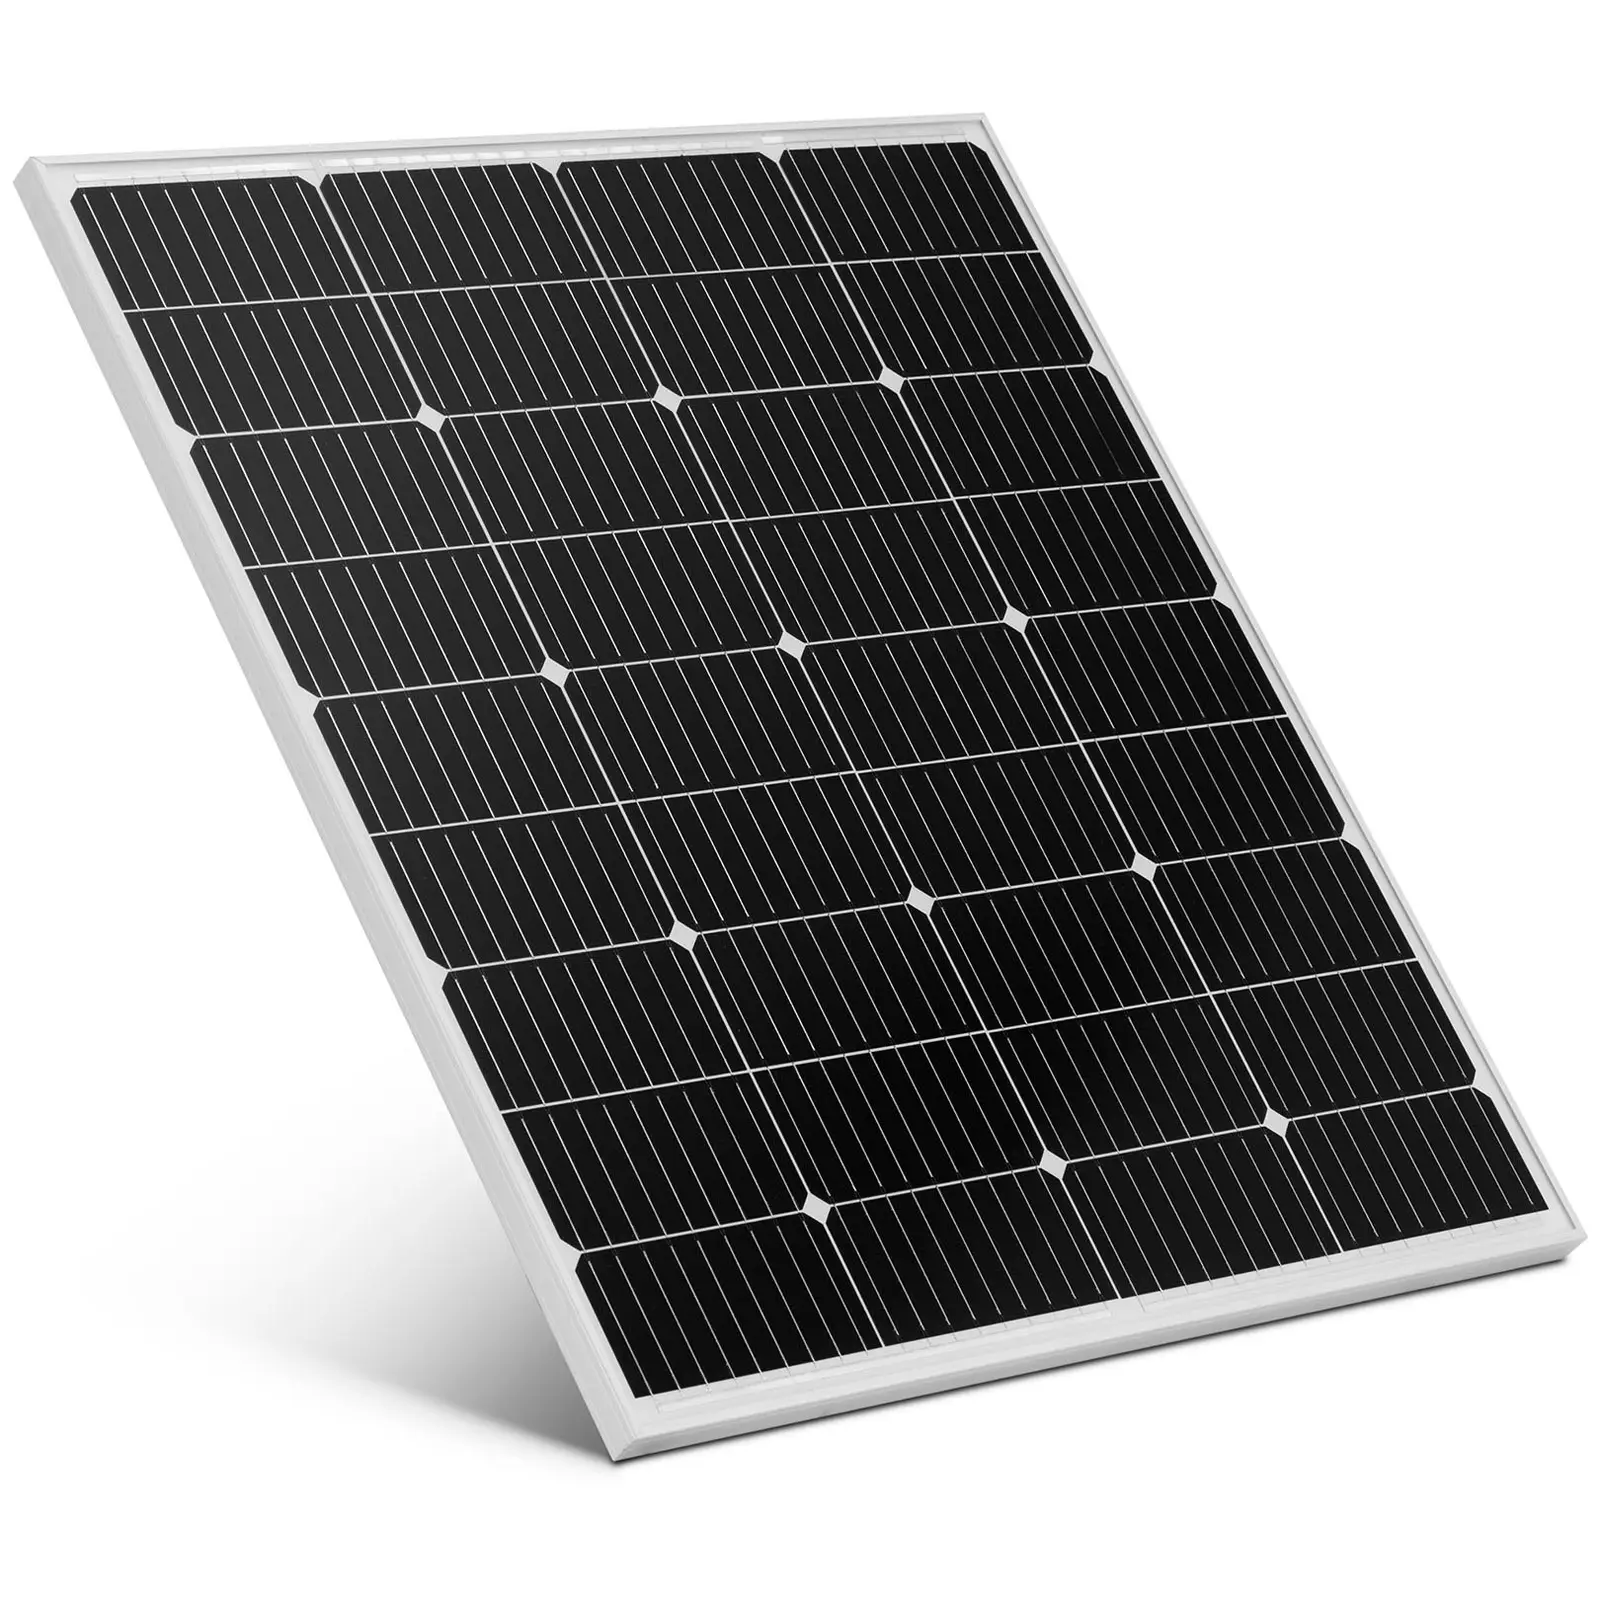 Pannello solare monocristallino - 110 W - 24.19 V - Con diodi di bypass